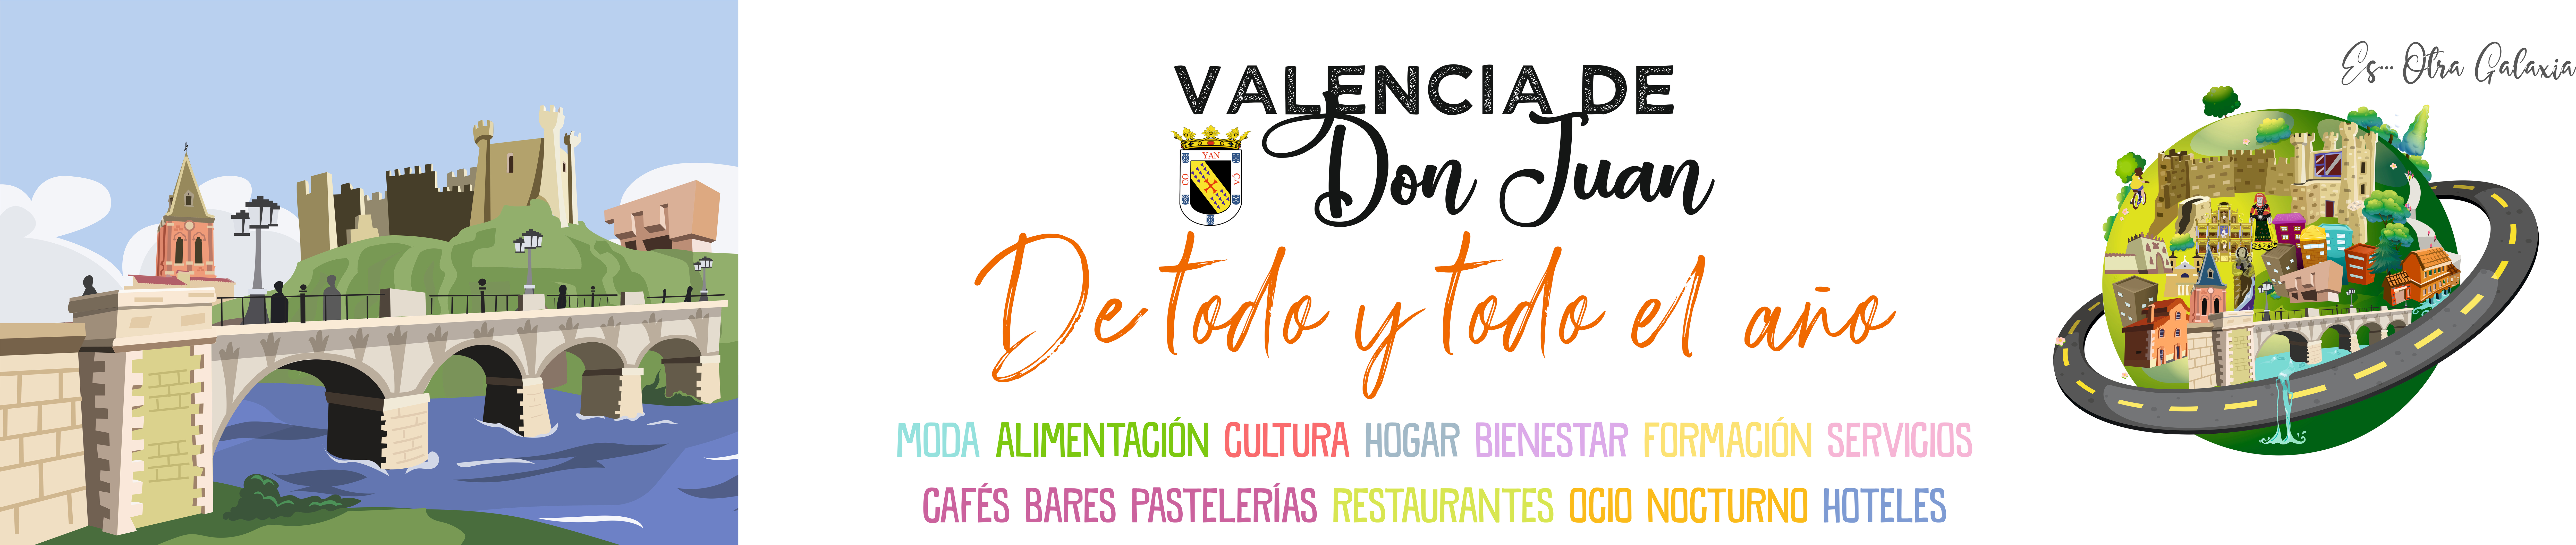 Valencia-De-Don-Juan-Postales-De-Todo-Y-Todo-El-Año-Web